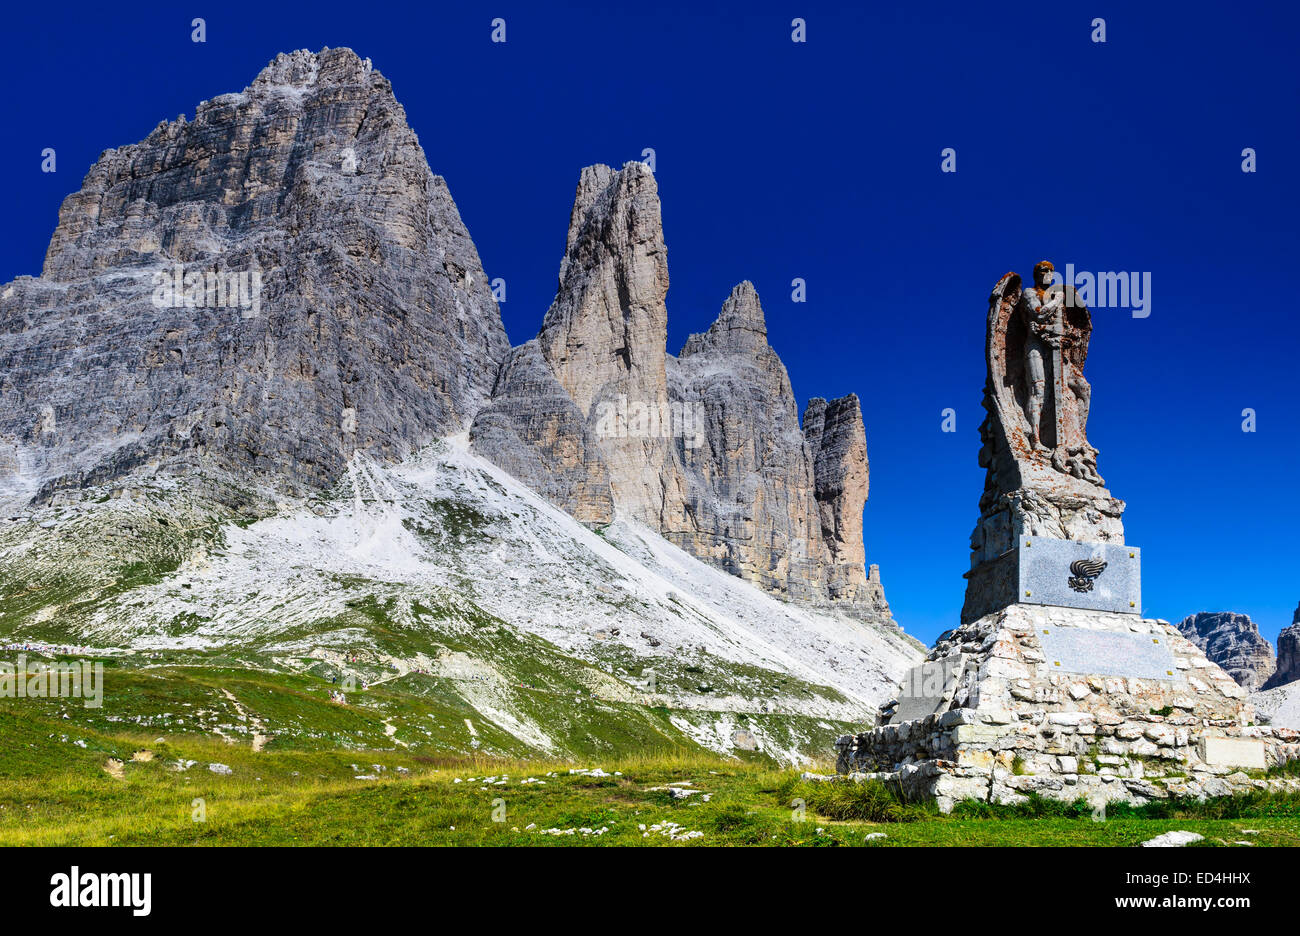 Vista del famoso Tre Cime di Lavaredo,Tre Cime di Lavaredo nelle Dolomiti, uno tra i più noti di montagna delle Alpi in Europa Foto Stock